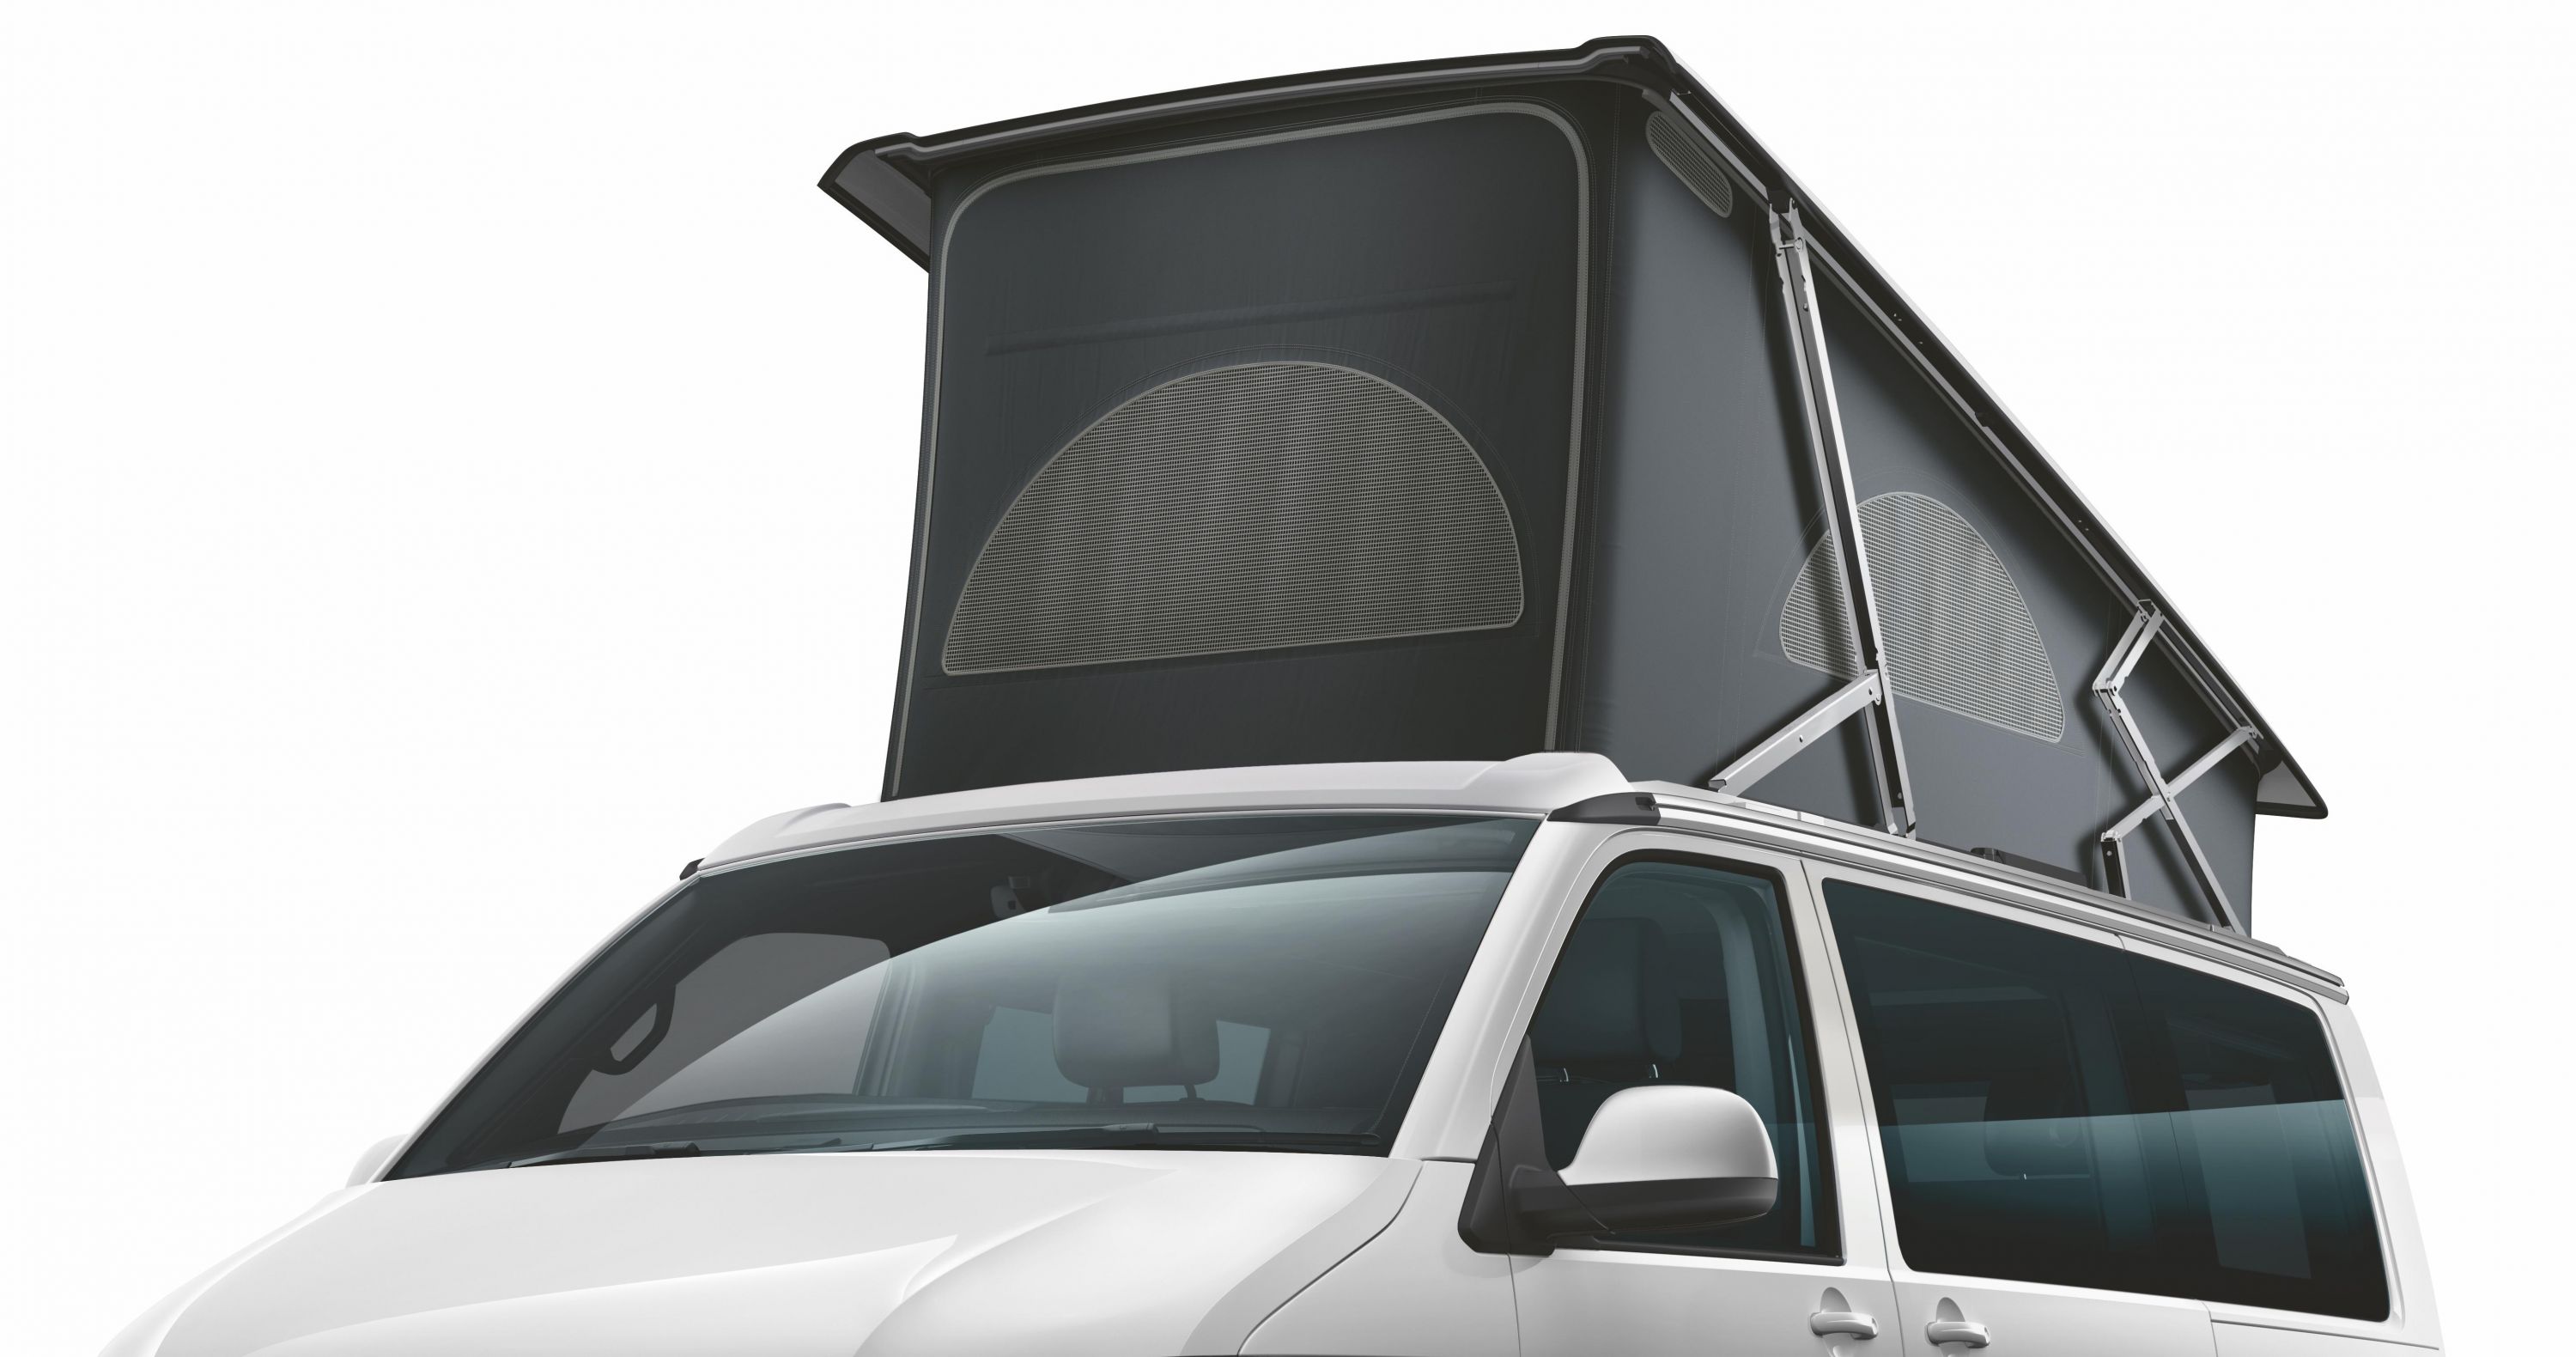 Volkswagen reveals T6.1 Multivan Cruise and California Beach Camper Van